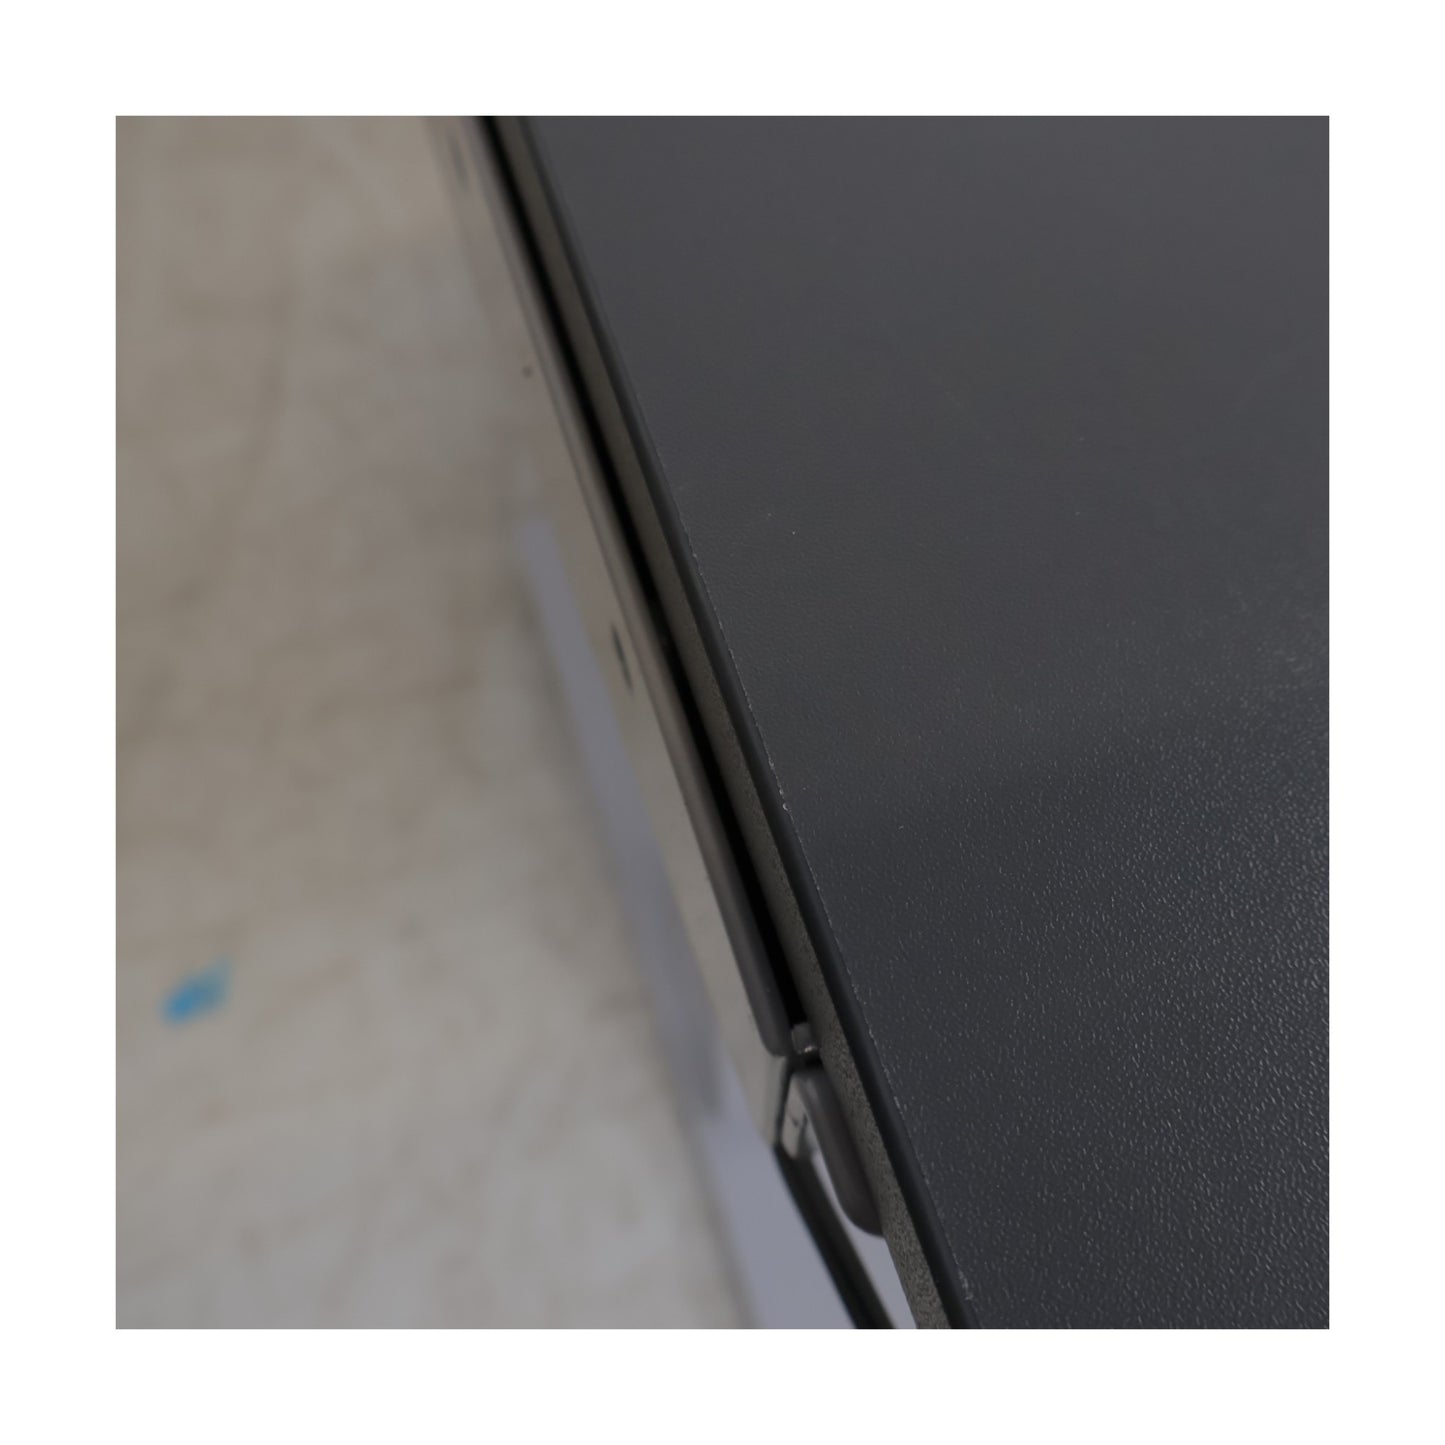 Kvalitetssikret | Flexus elektrisk hev/senk skrivebord fra AJ Produkter